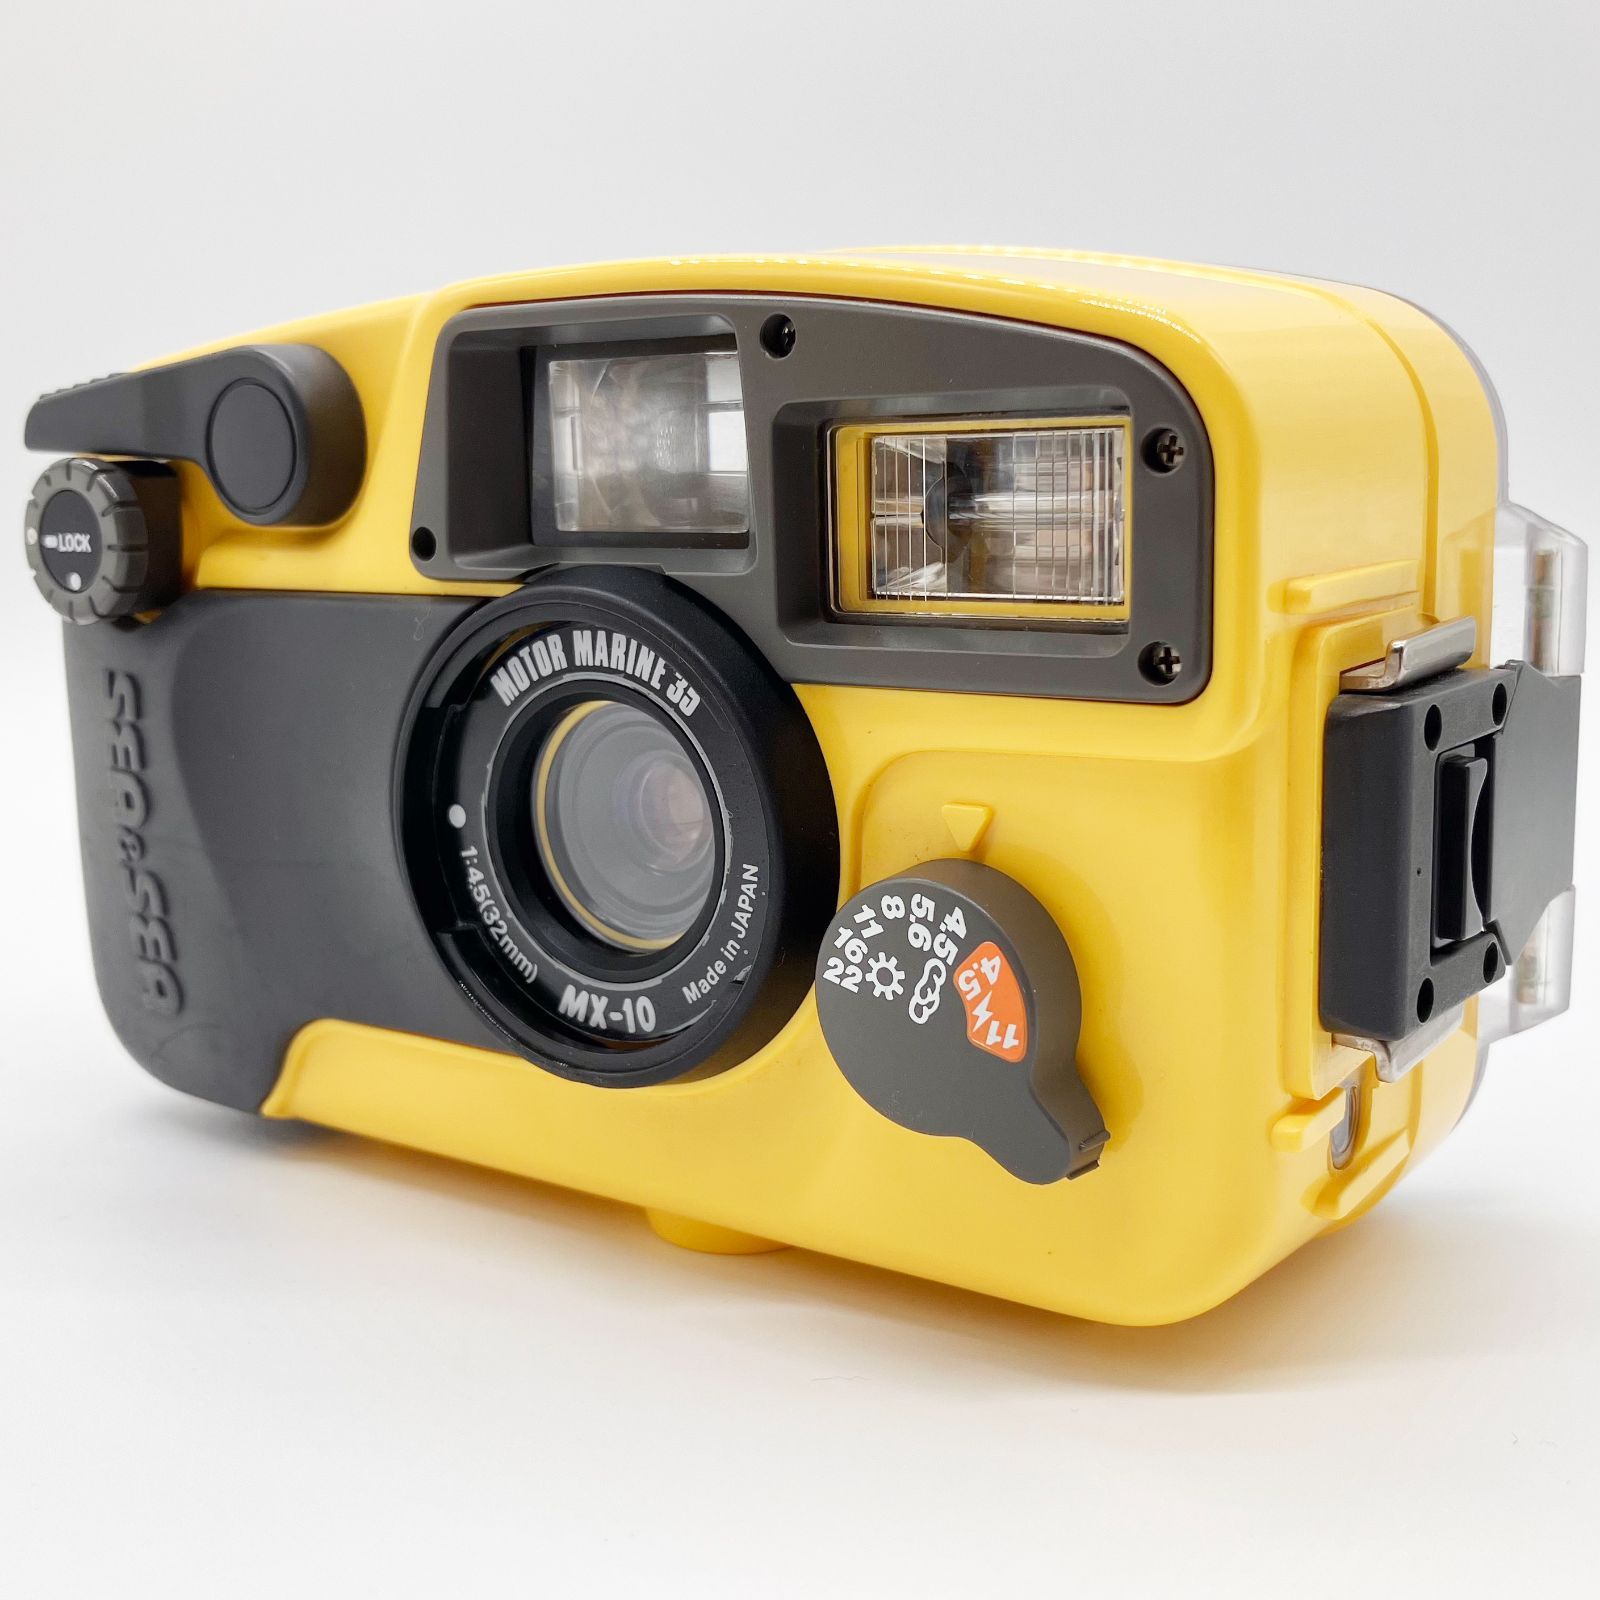 sea &sea 水中カメラセット - デジタルカメラ